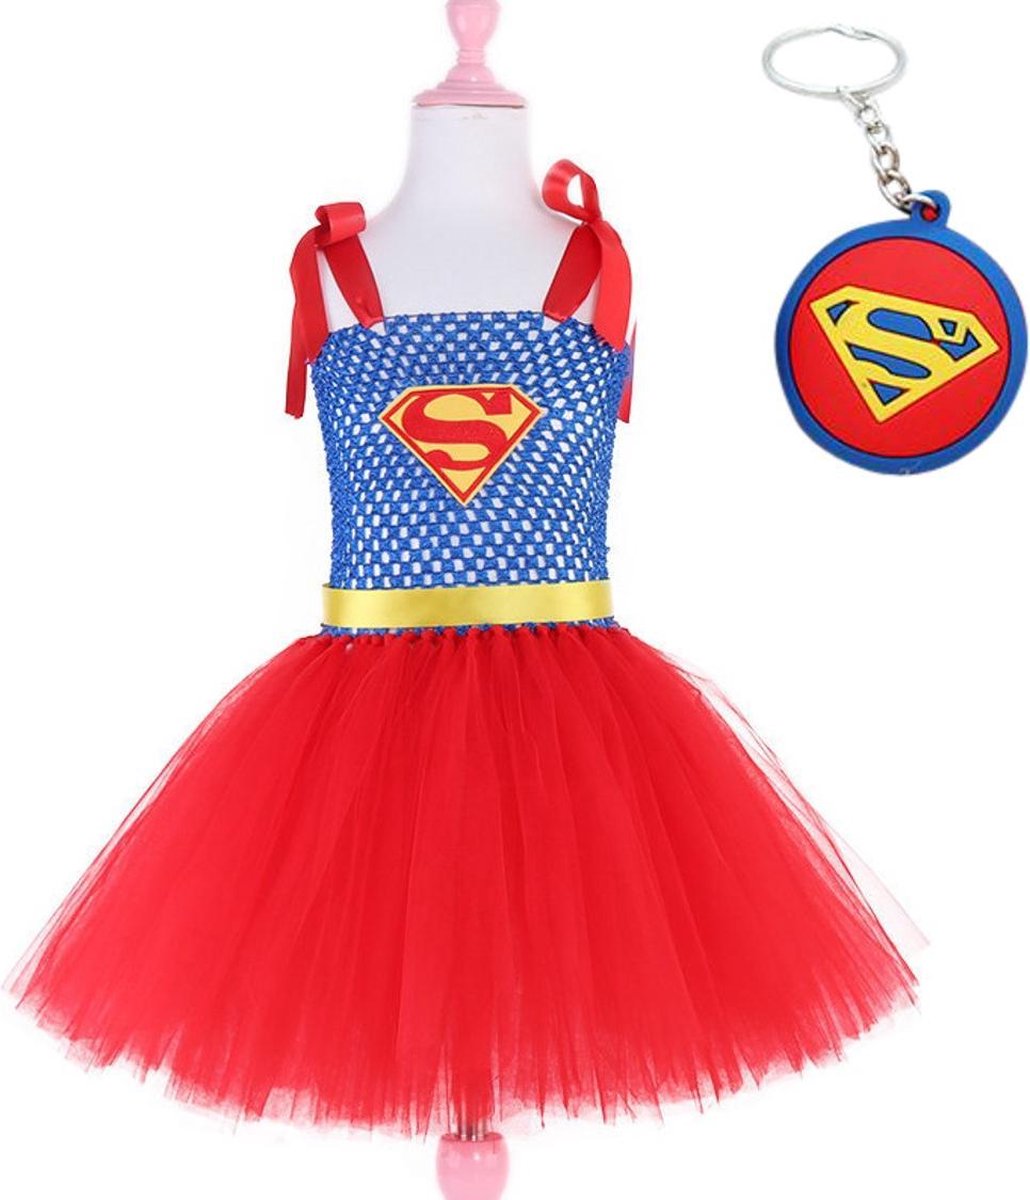 Superman pak kostuum super girl superheld tutu prinsessen jurk meisje 140-146 (140) + GRATIS tas/sleutel hanger verkleedkleding